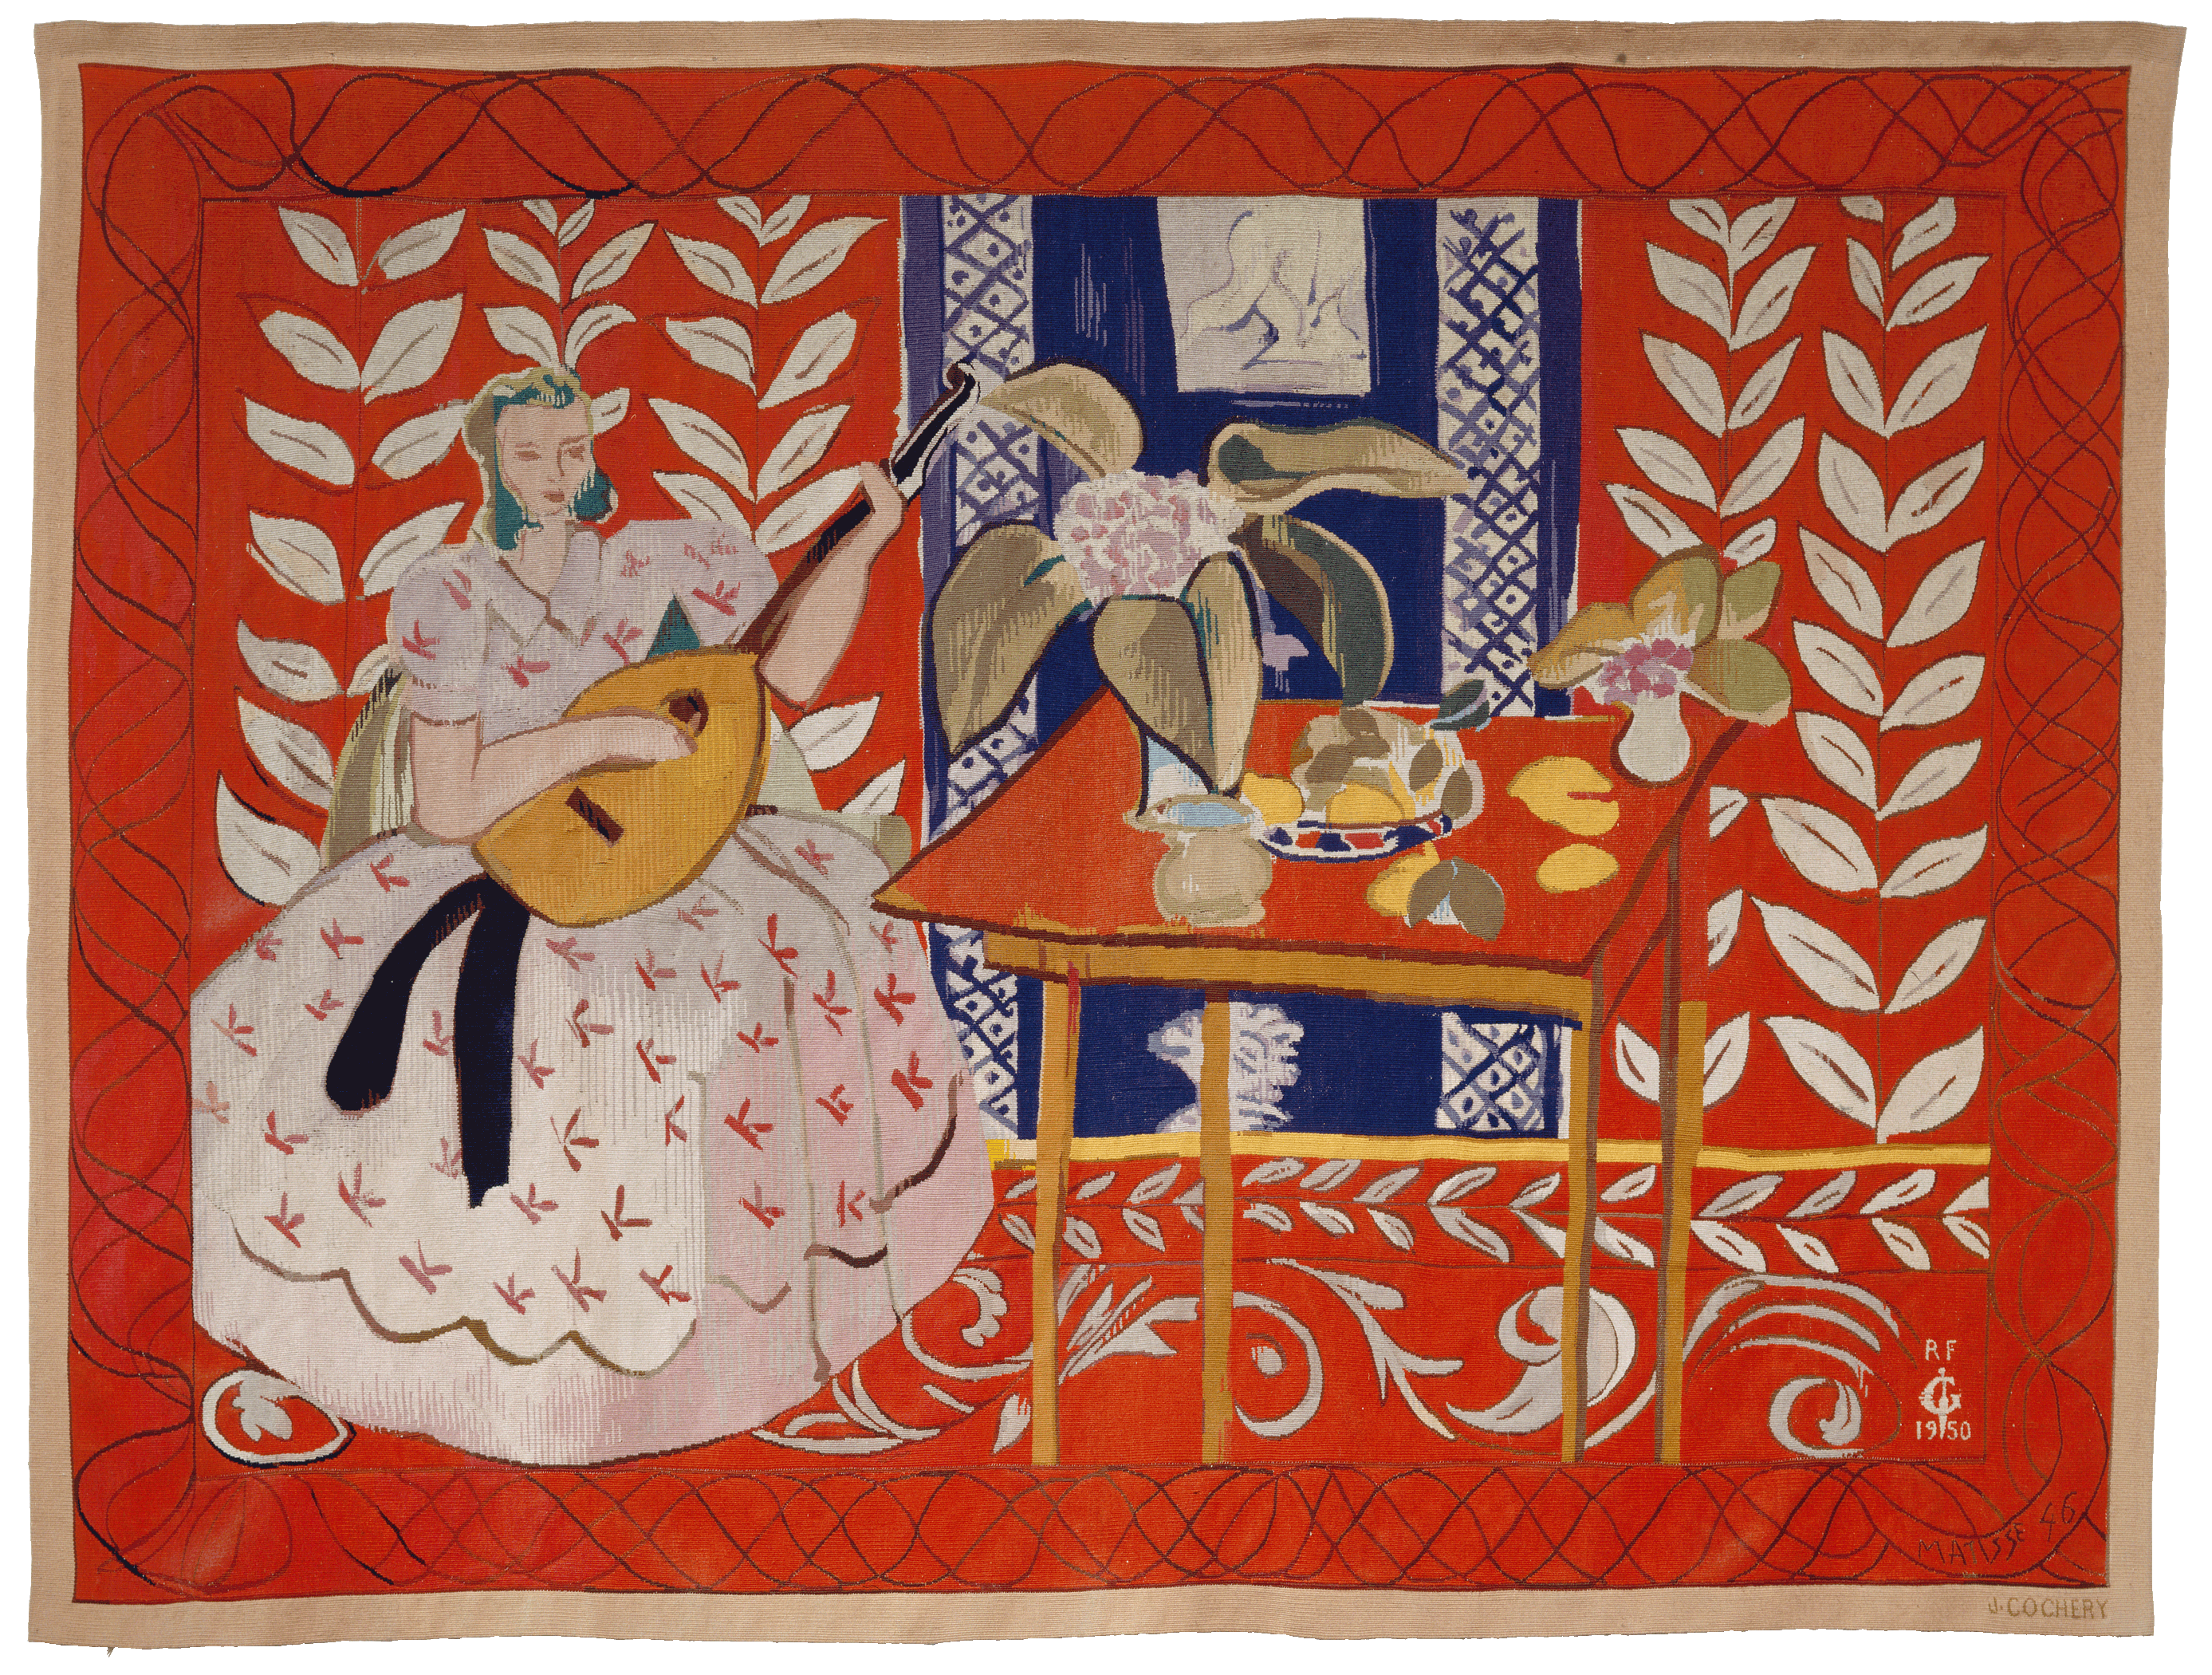 亨利·马蒂斯，《弹鲁特琴的女子》，1949年5月14日-1950年10月23日，羊毛，哥白兰制造厂根据马蒂斯的设计图稿采用直立式经纱织造而成，158.5 × 212 cm，艺术家自留版2/2。法国北方省省立马蒂斯美术馆，勒卡托-康布雷齐 。亨利·马蒂斯捐赠，1952年，Inv. 1952-64。图片由法国北方省省立马蒂斯美术馆，佛洛里安·克莱奈芬提供。